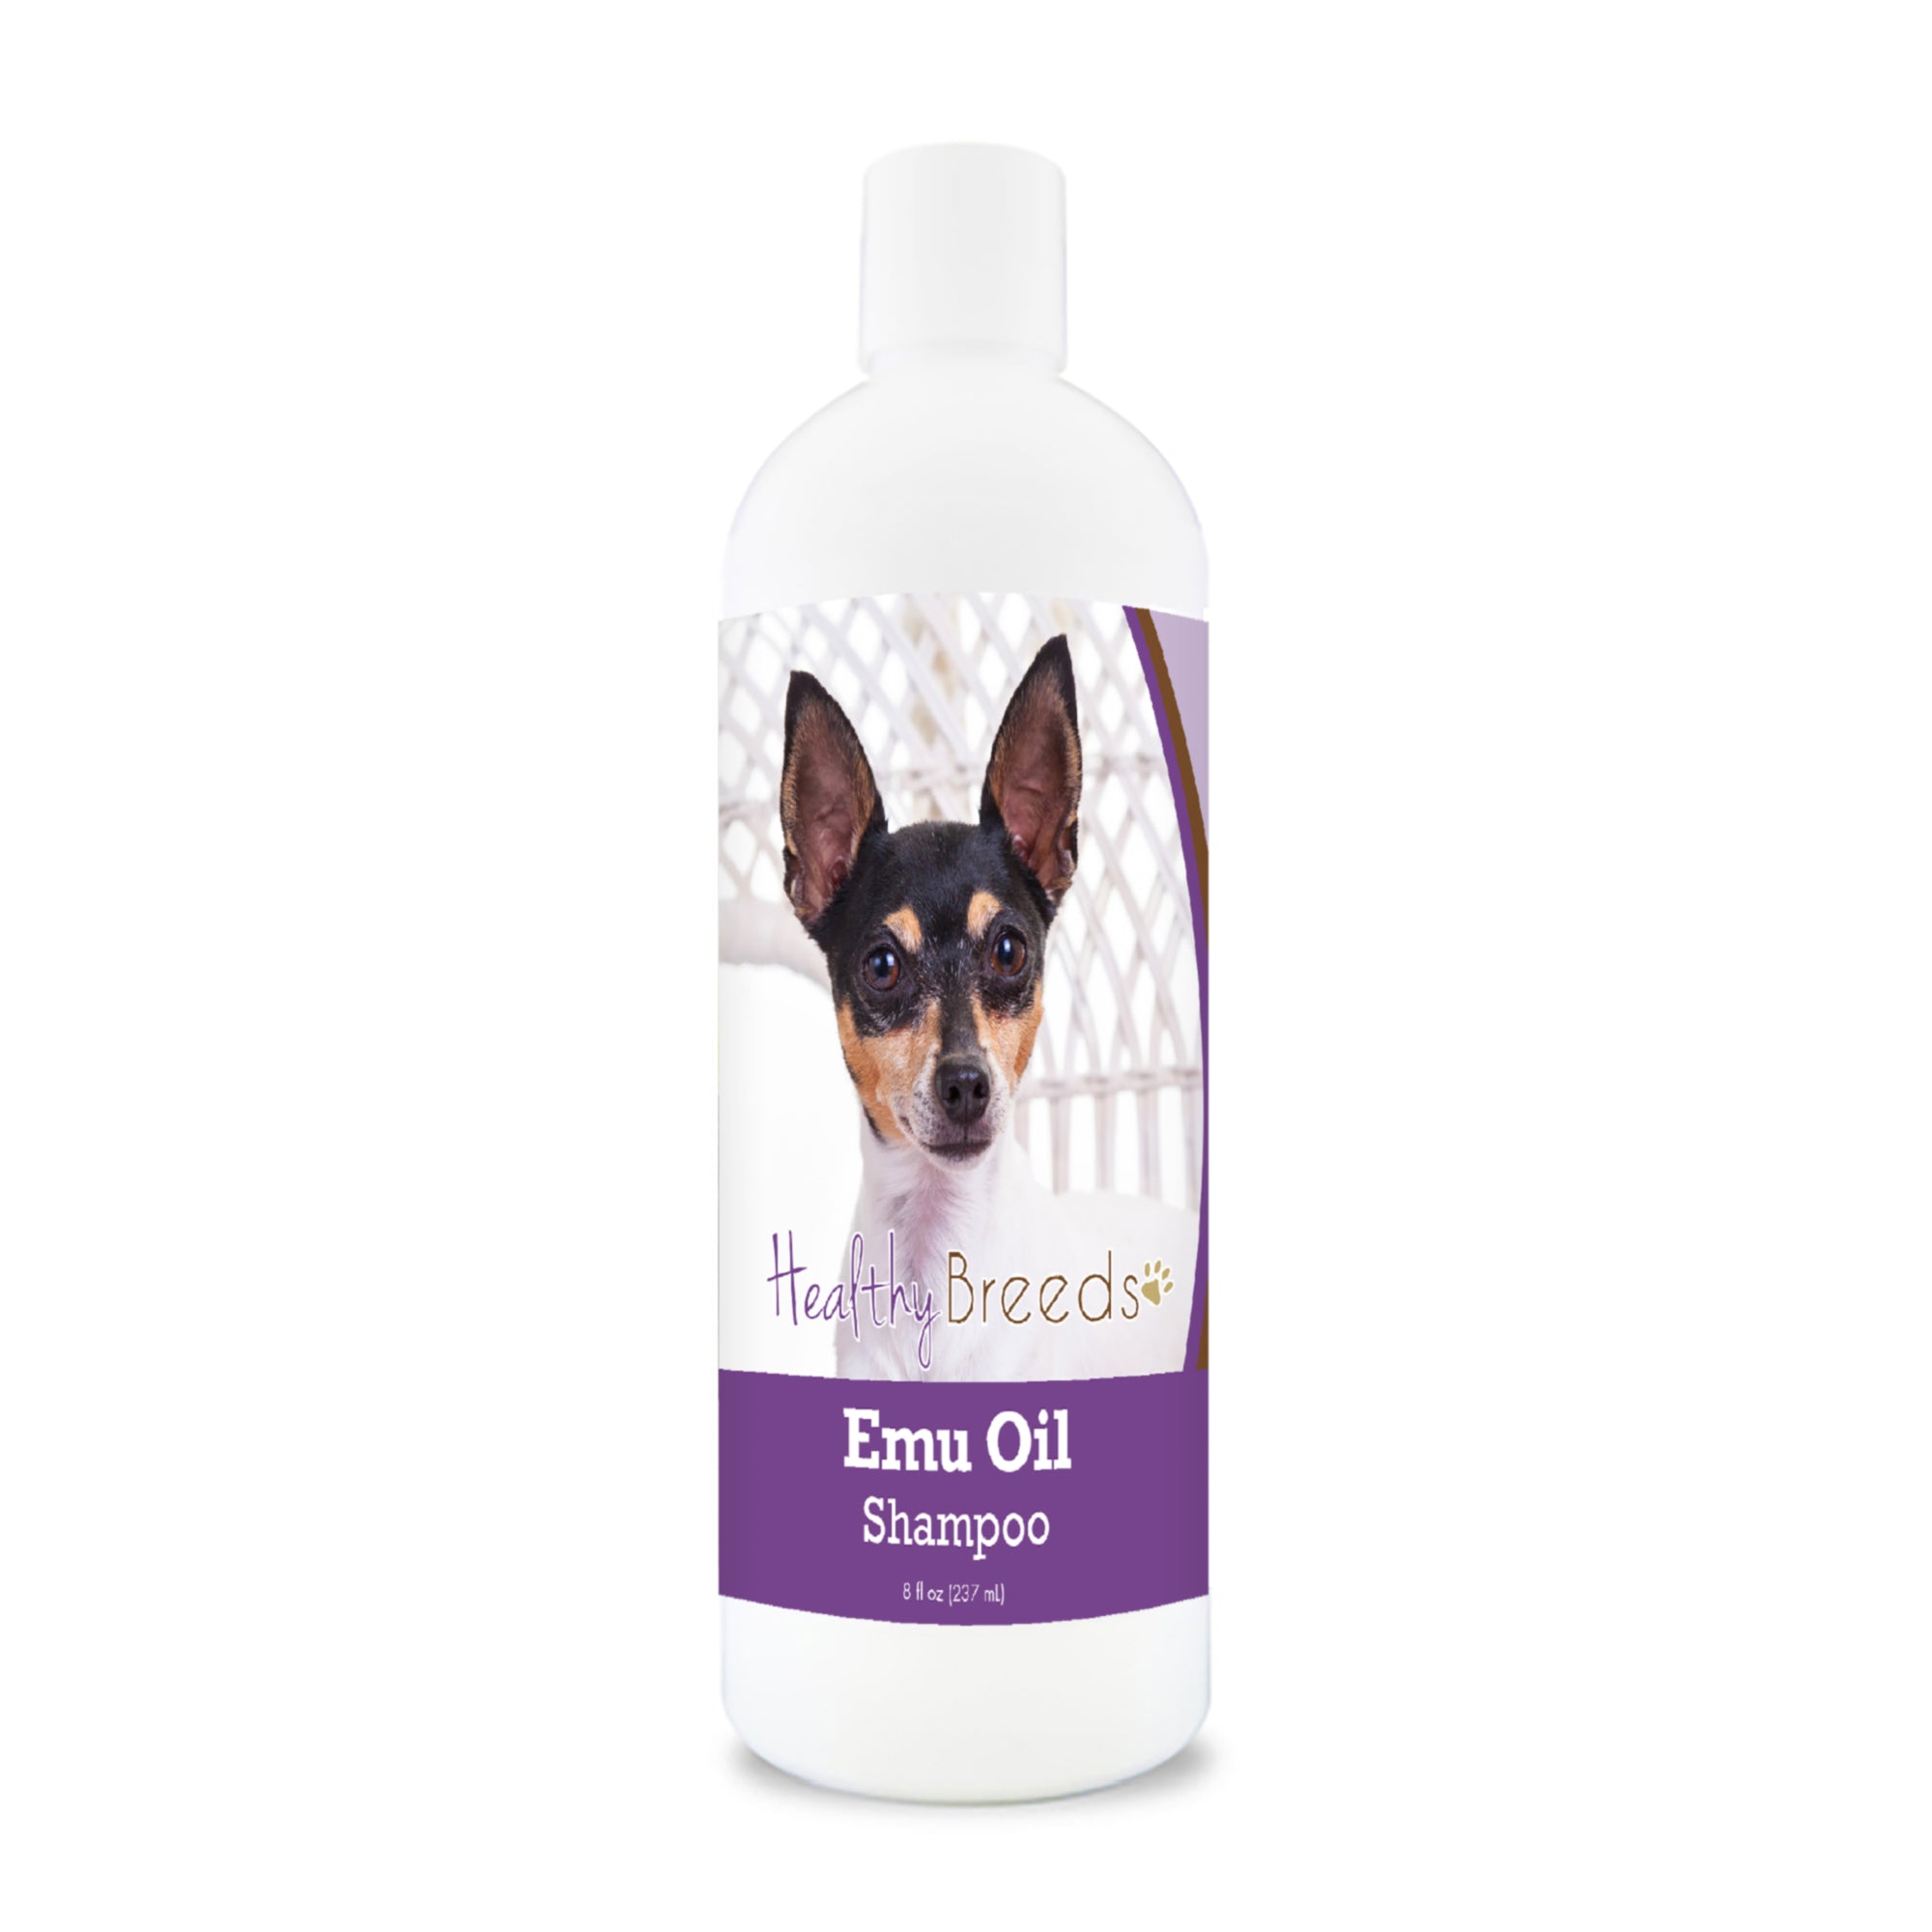 Toy Fox Terrier Emu Oil Shampoo 8 oz